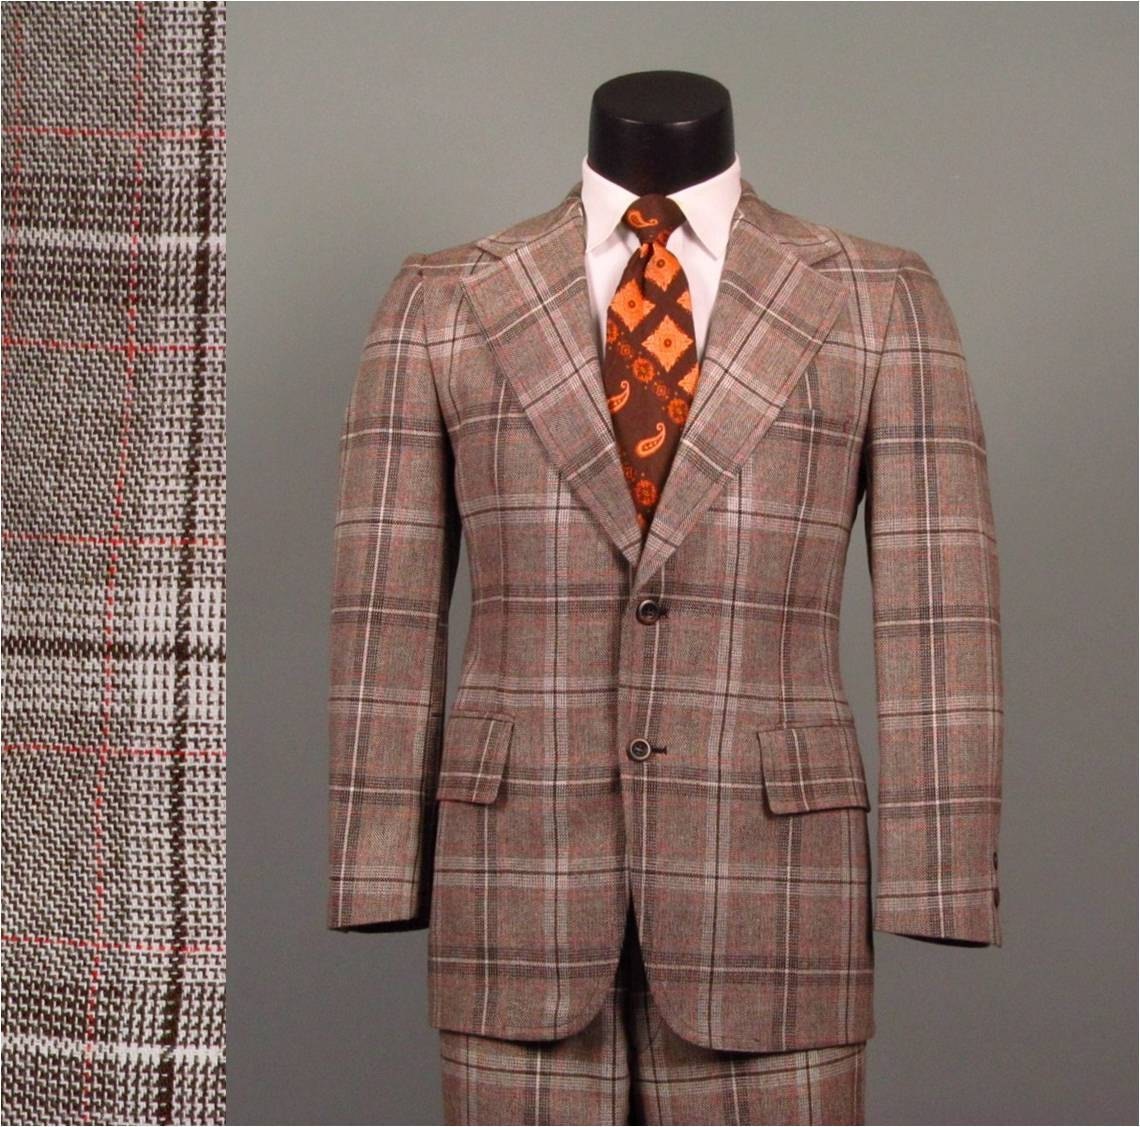 Vintage Plaid Suits 53